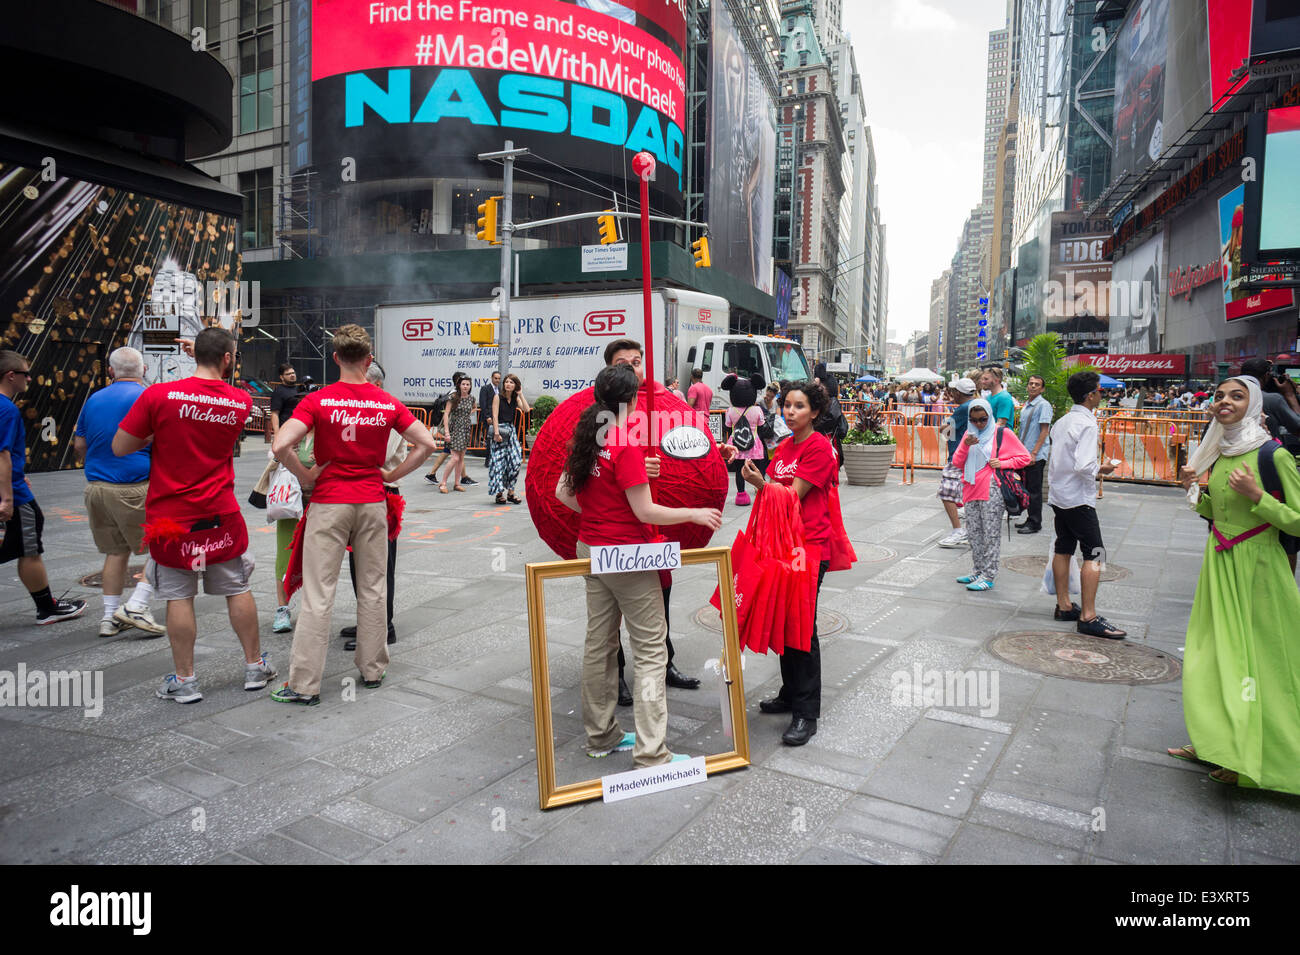 Michaels arts et métiers détaillant un évènement promotionnel à Times Square à New York, en face de la bourse Nasdaq Banque D'Images